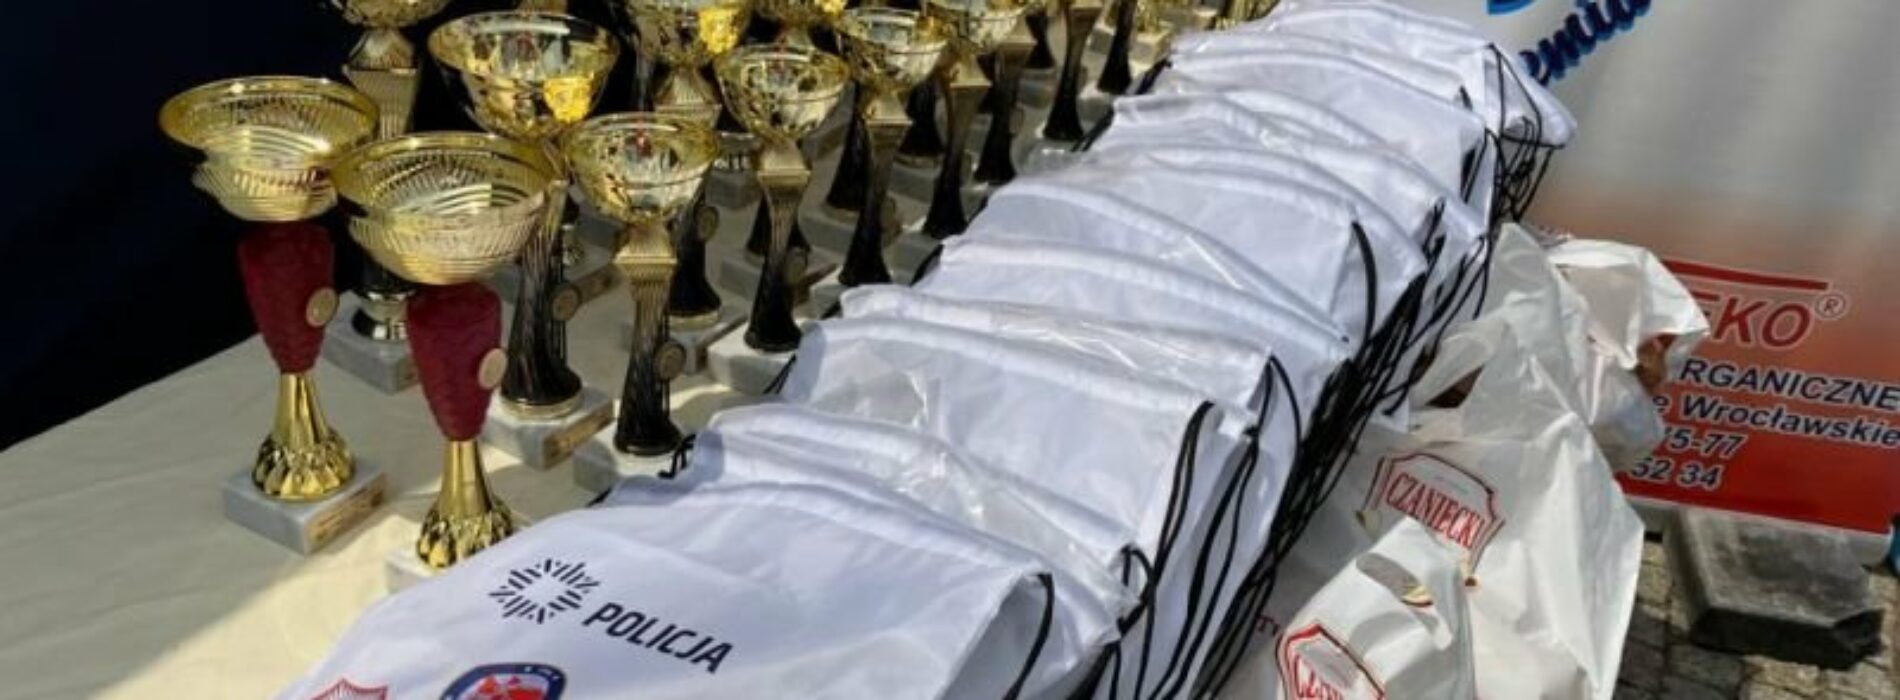 IV Mistrzostwa Polski Policji w Triathlonie odbyły się pod Wrocławiem